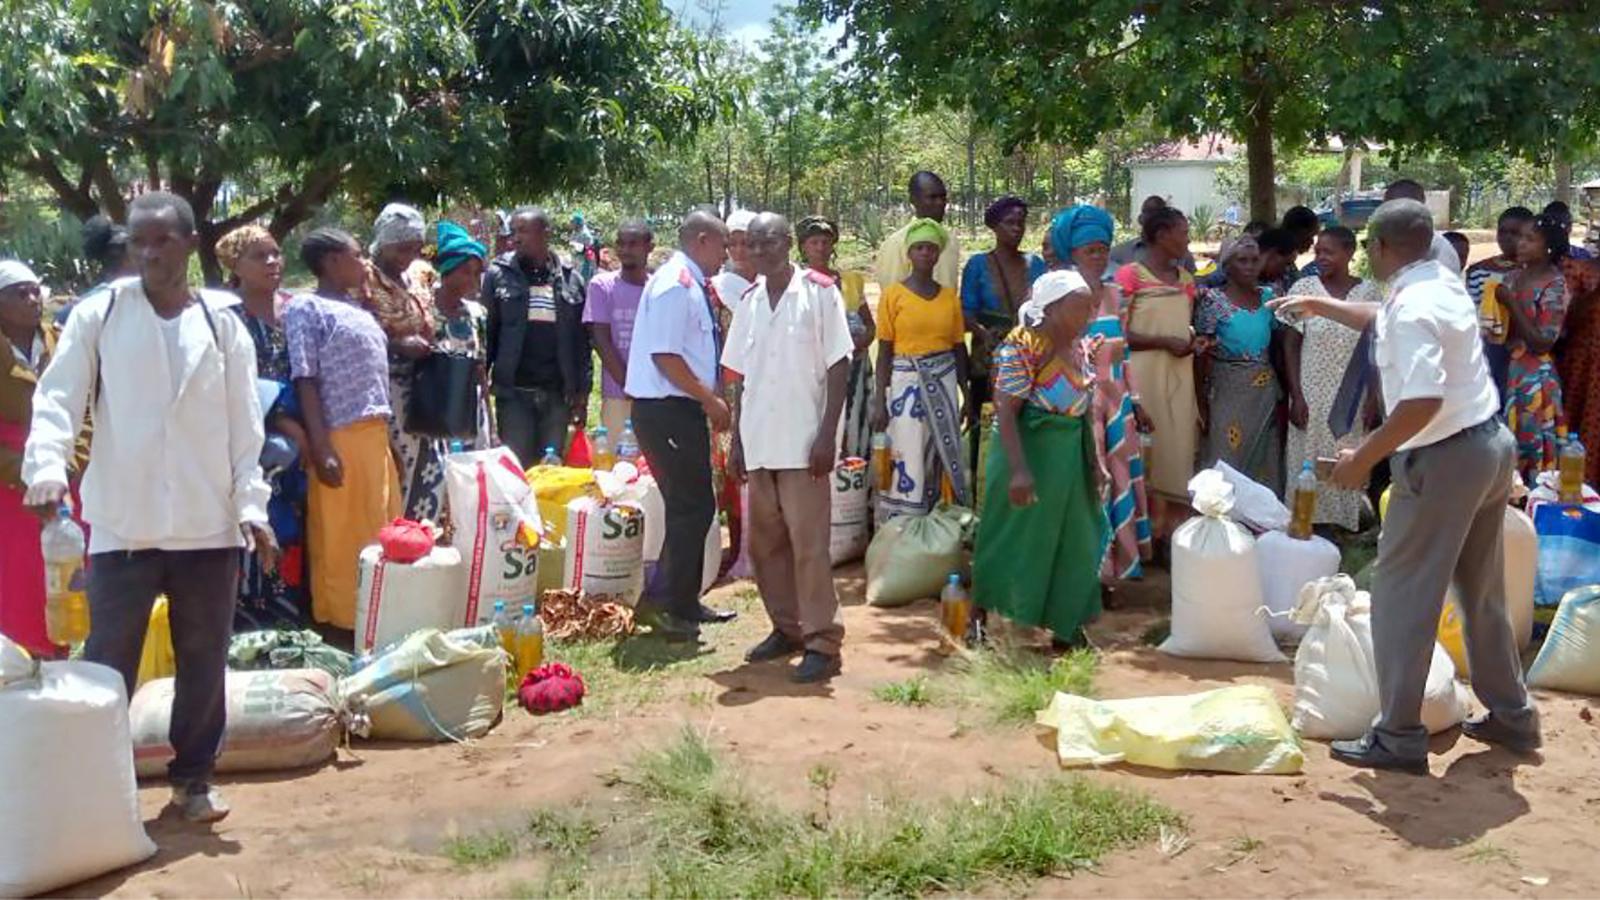 Frälsningsarméns personal i Tanzania delar ut mat från säckar till en grupp människor.